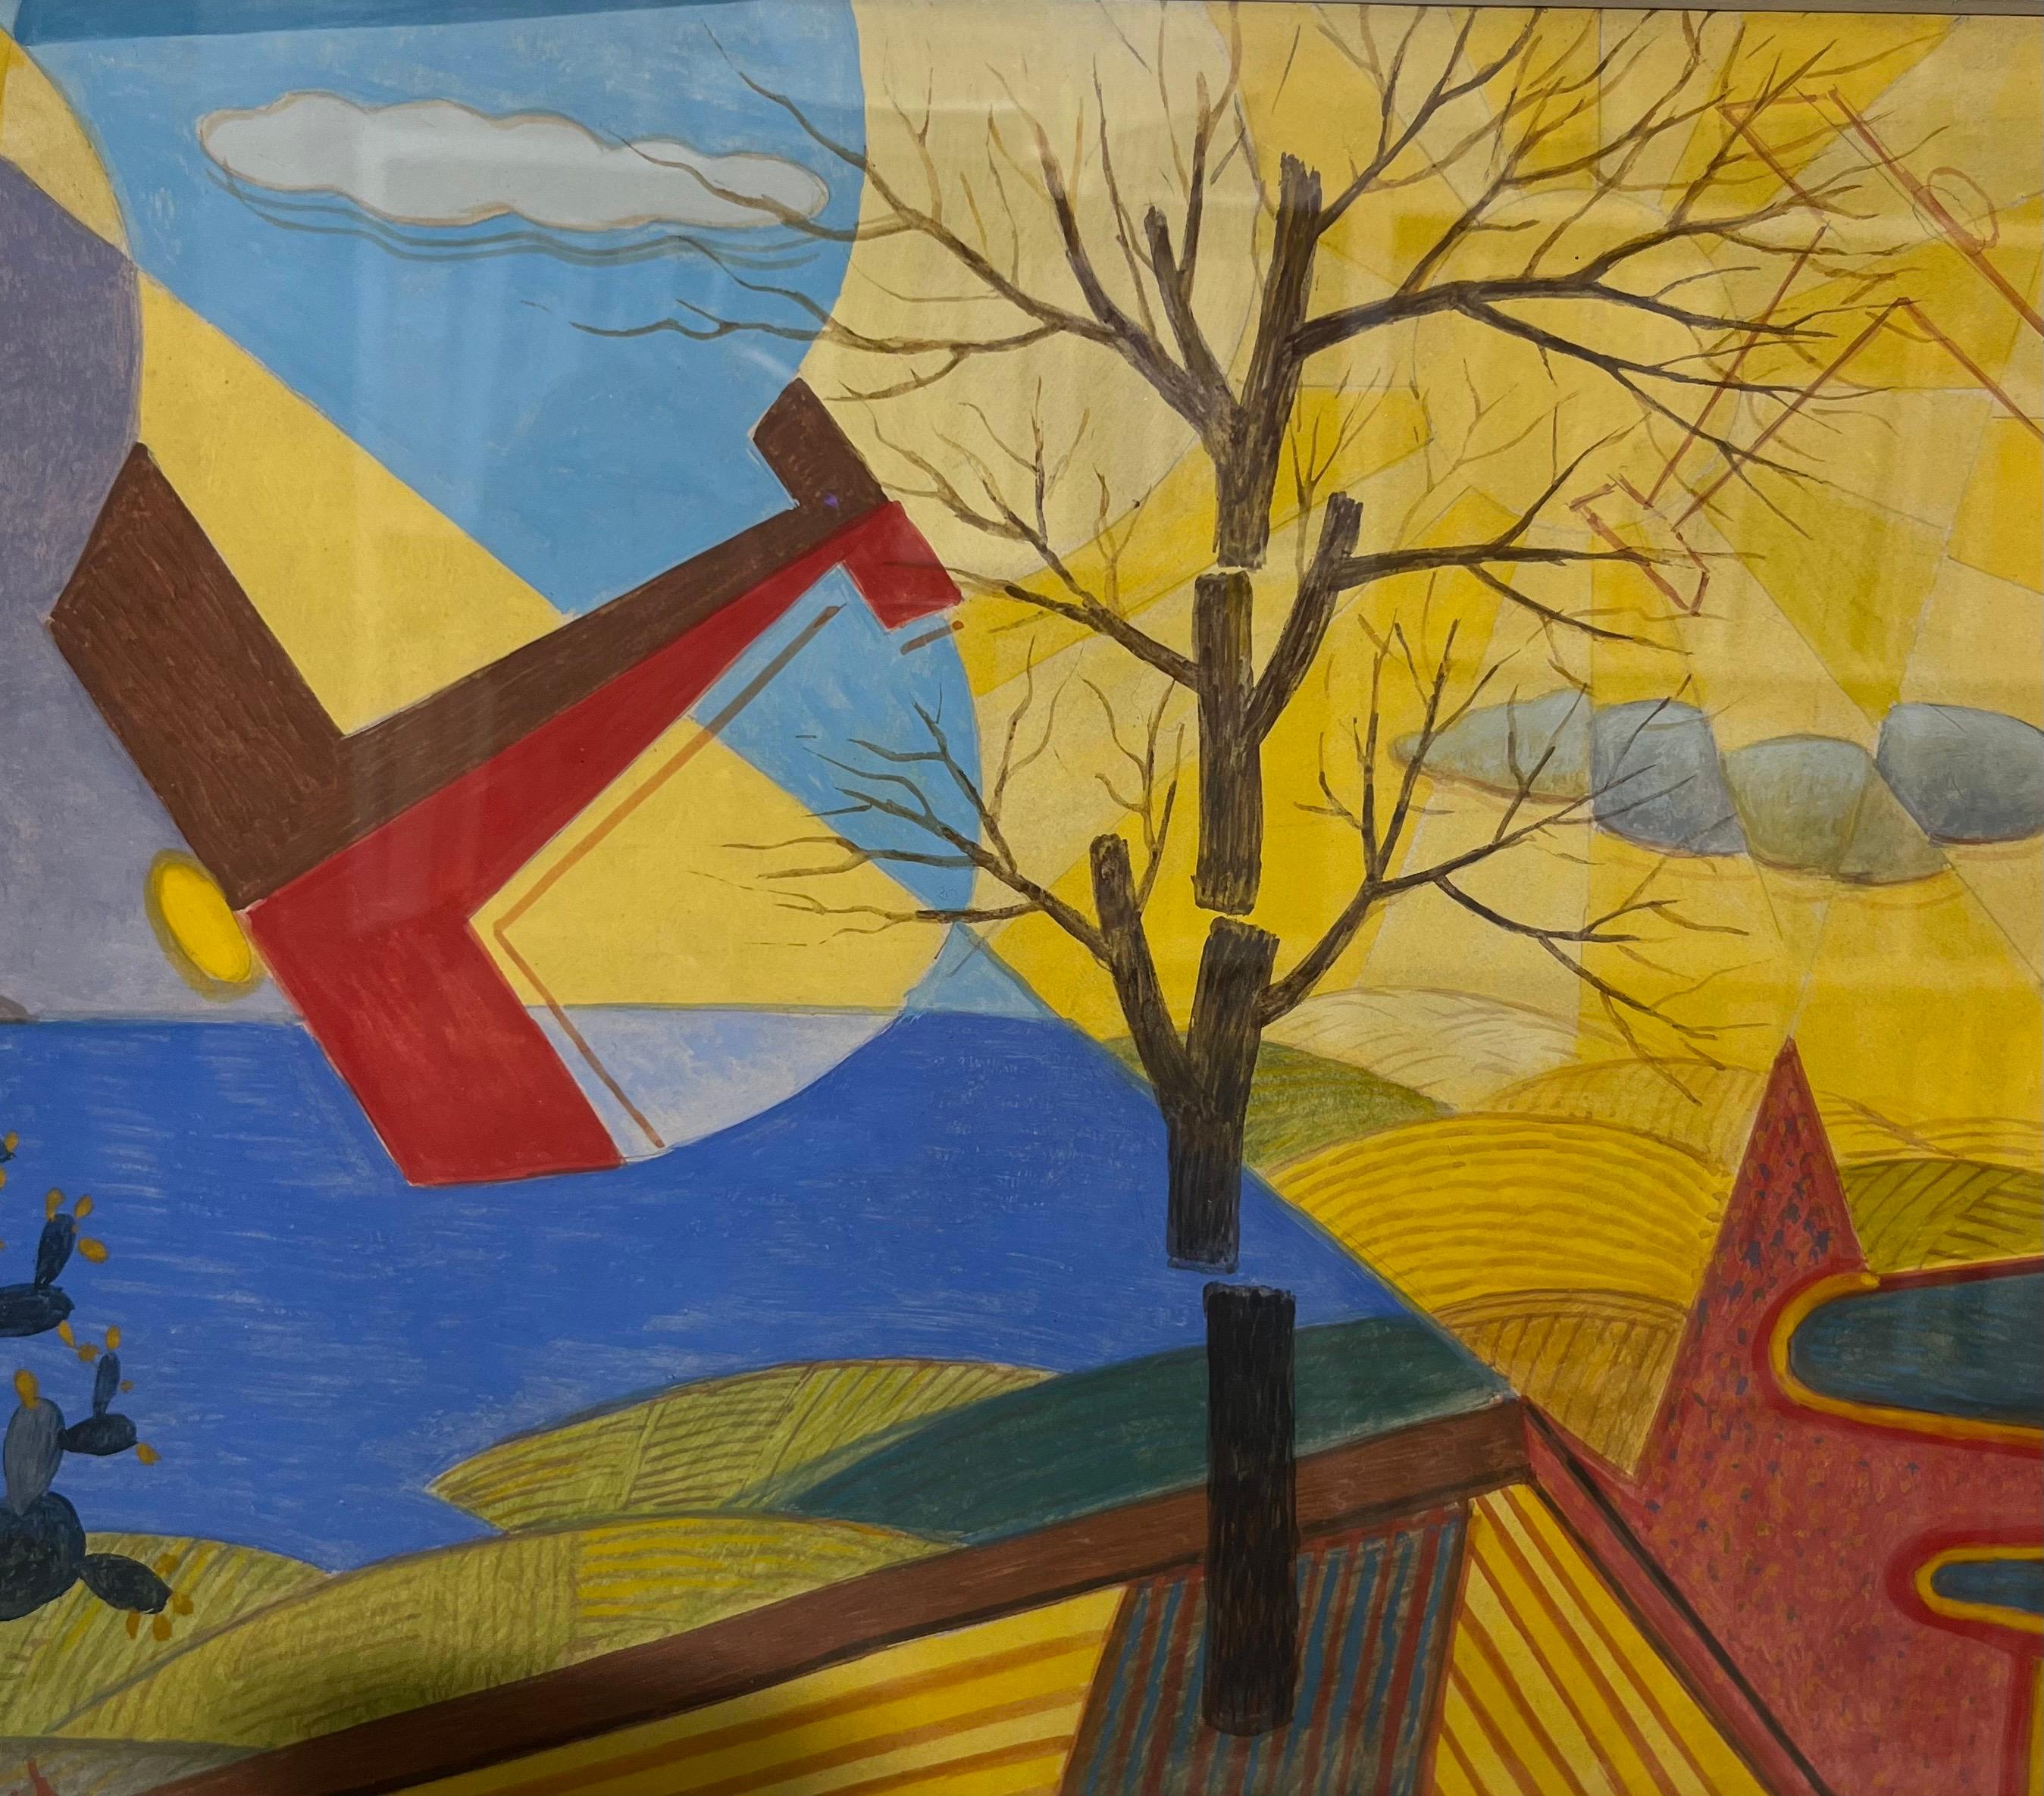 Giulio D'Anna est l'un des plus importants peintres du 2e Futurisme italien 
L'opéra lumineux représente un avion en vol dans le ciel sicilien.
Couleurs vertes et ciel turquoise de la Sicile
L'opera ha l'autentica dell'archivio unico dei Futuristi